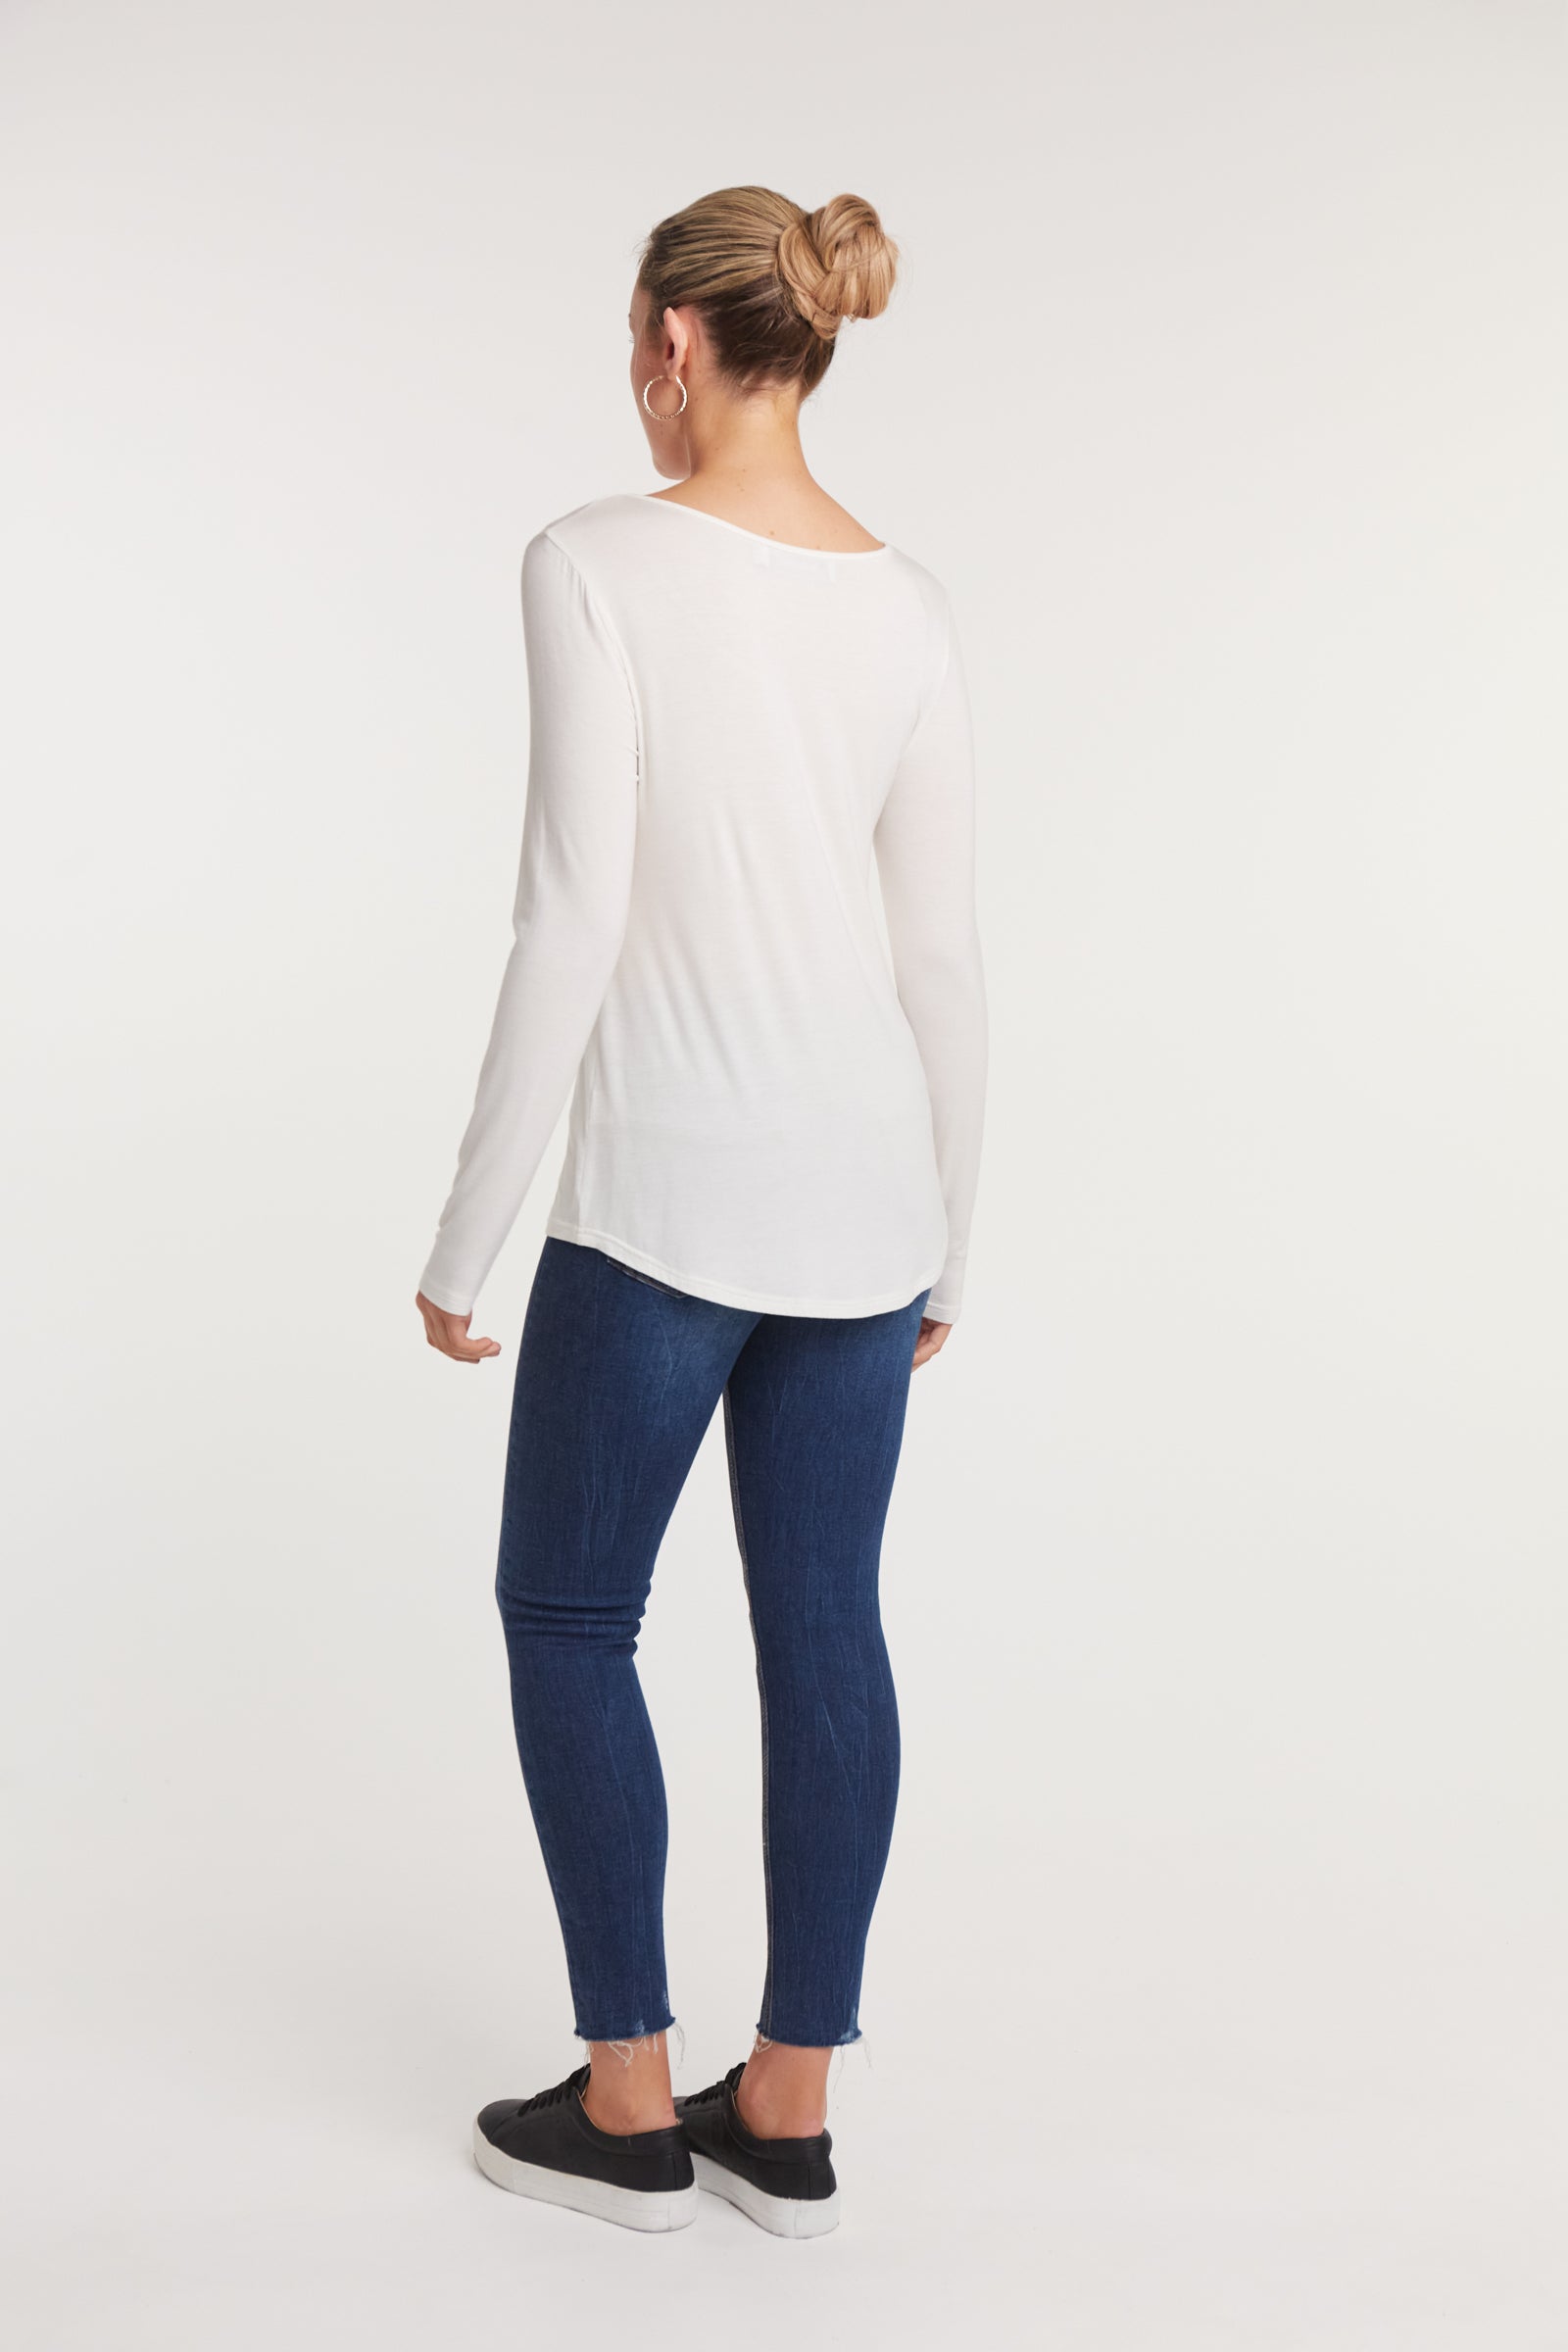 Basic Long Sleeve - White - eb&ive Clothing - Basic Top L/S